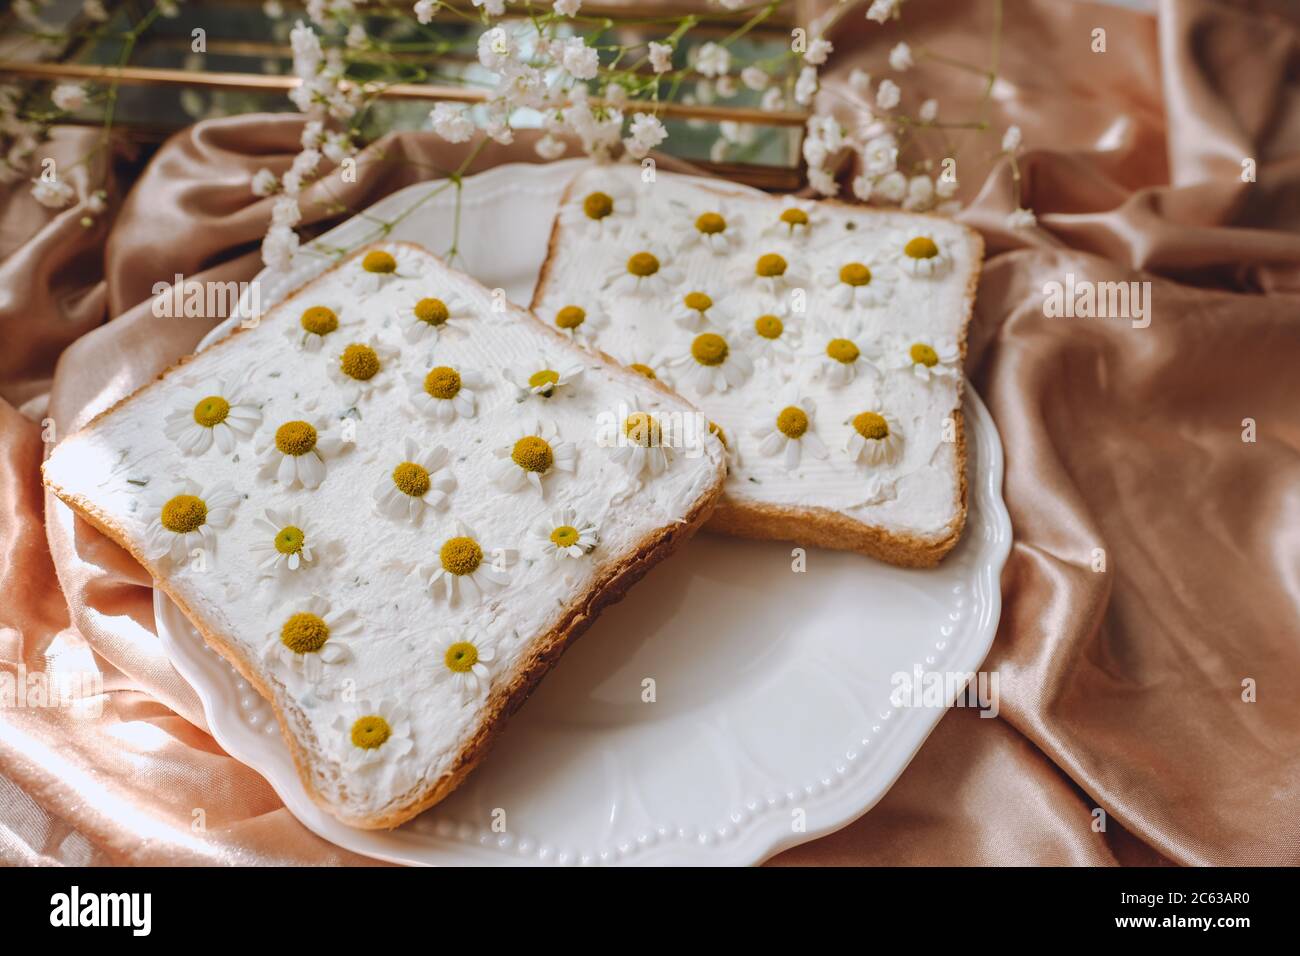 Griller le sandwich au pain avec des fleurs de camomille. Banque D'Images